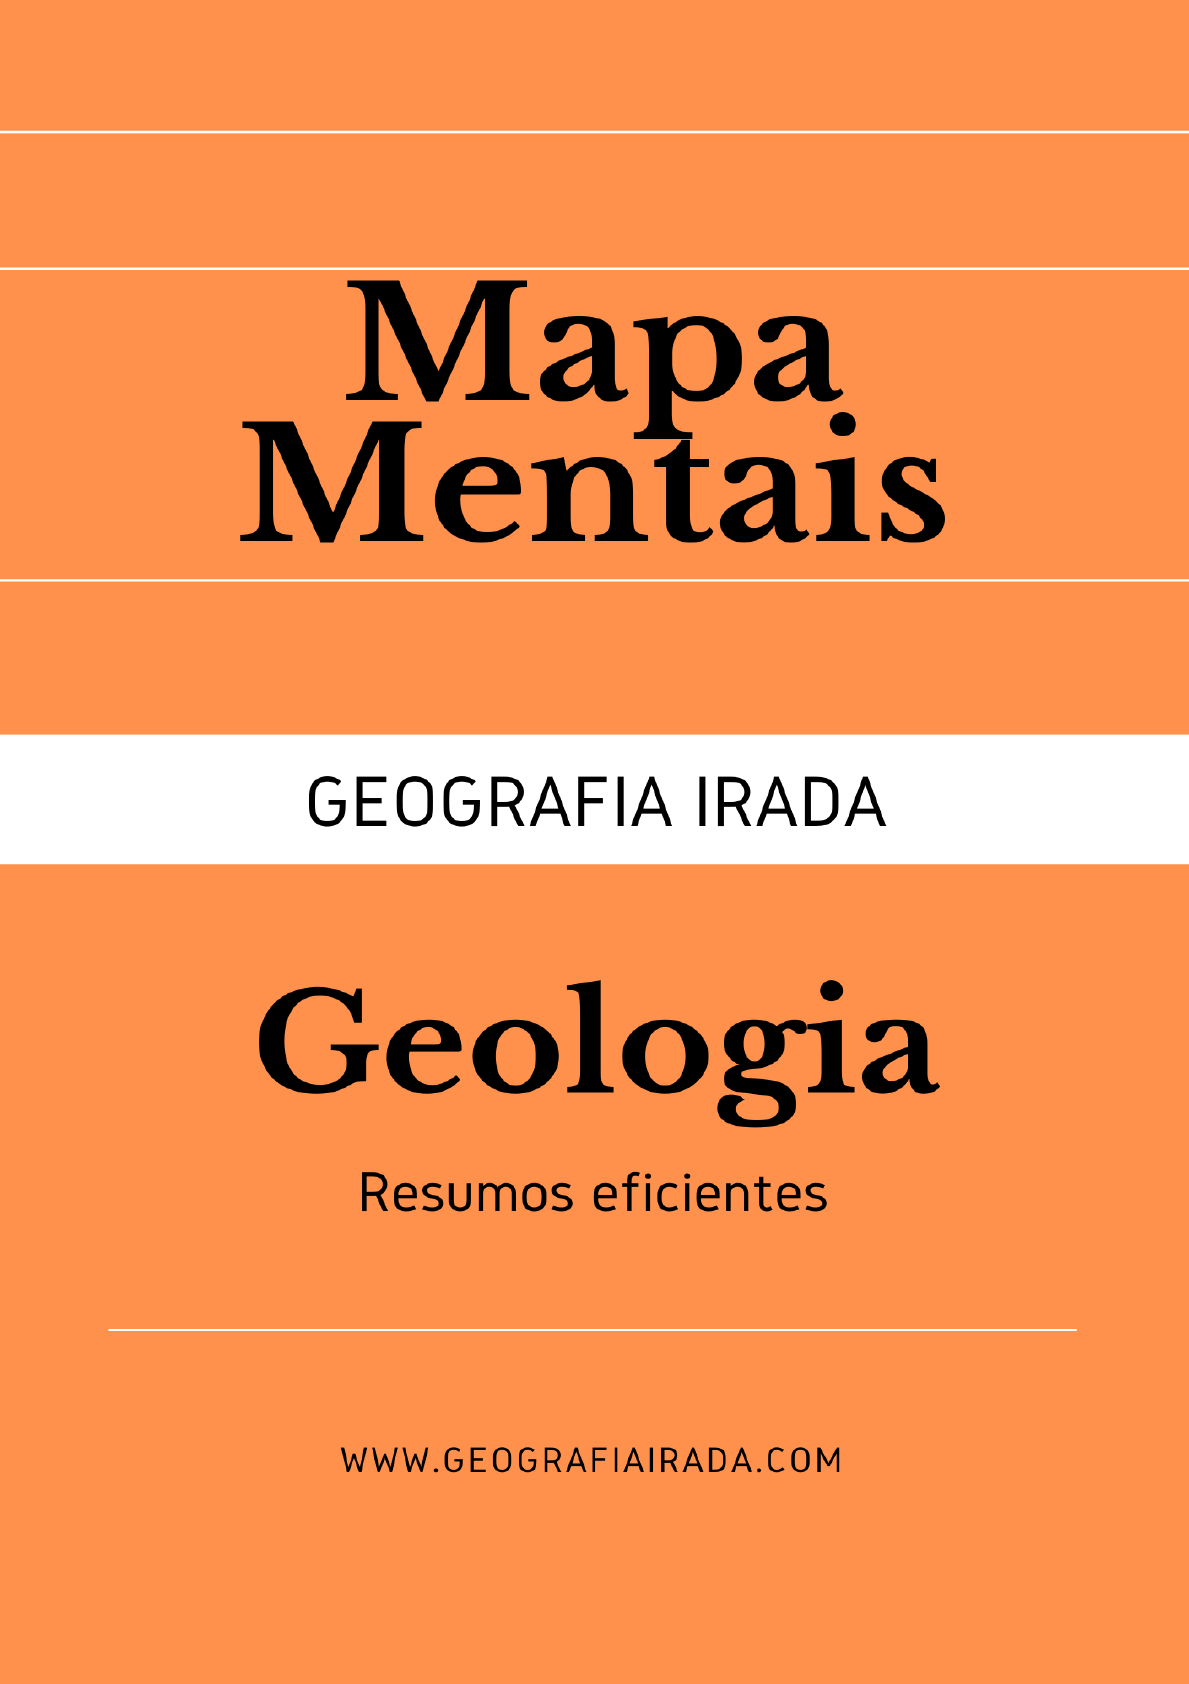 baixe-e-curta-mapa-mental-geologia-geografia